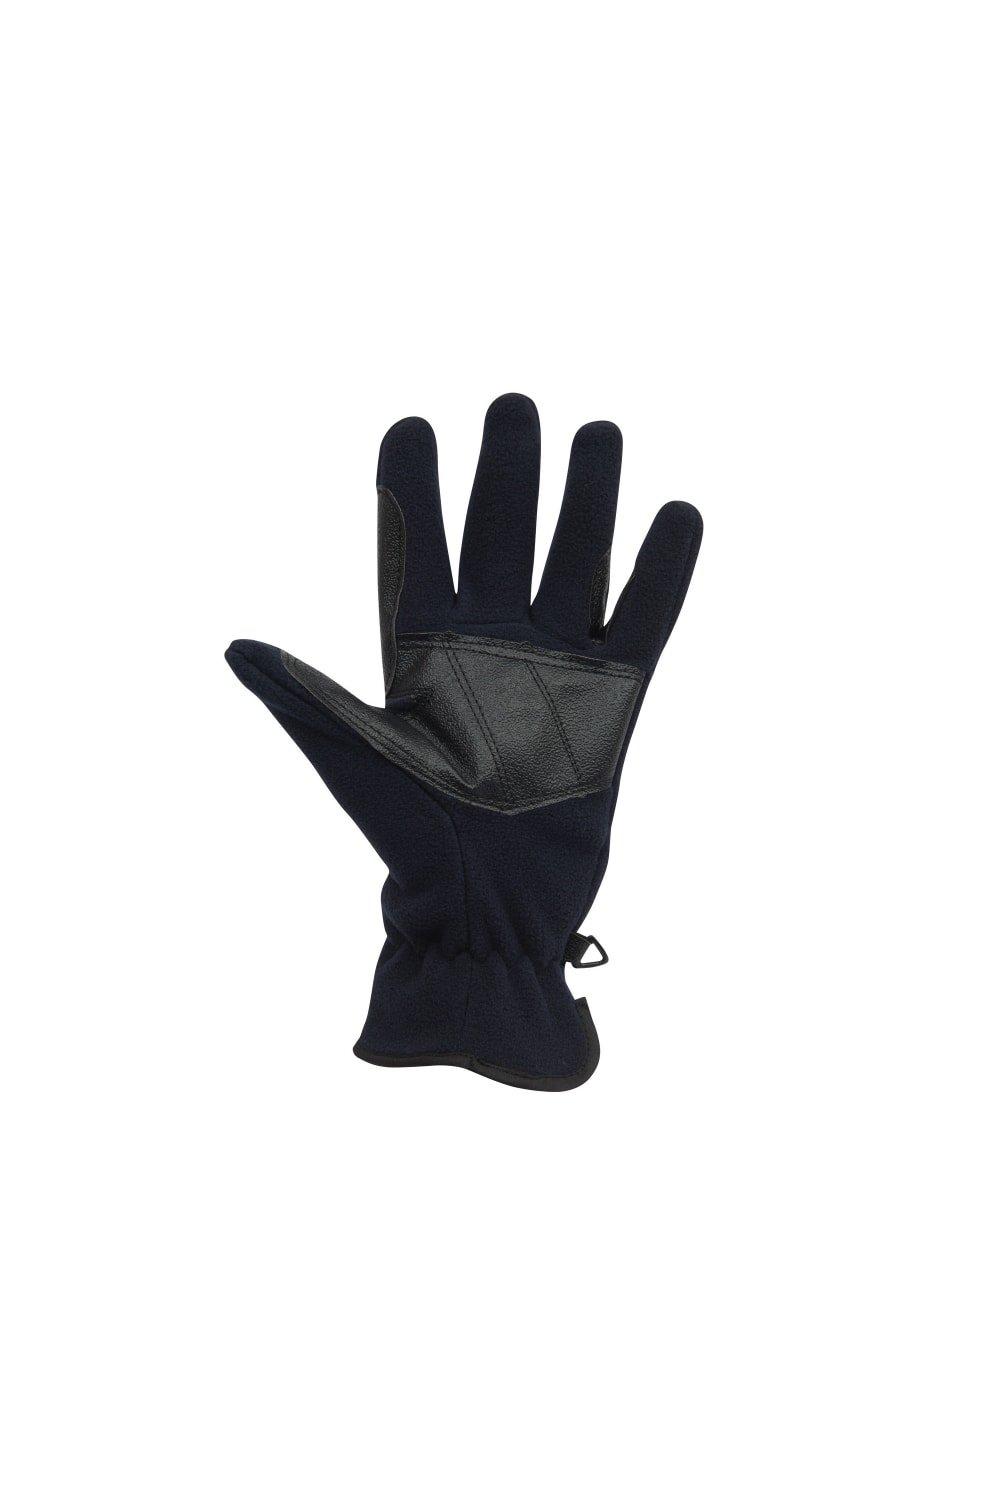 Флисовые перчатки для верховой езды Polar Dublin, темно-синий перчатки atmosphere fresh биколор размер m усиленные пальцы пвх